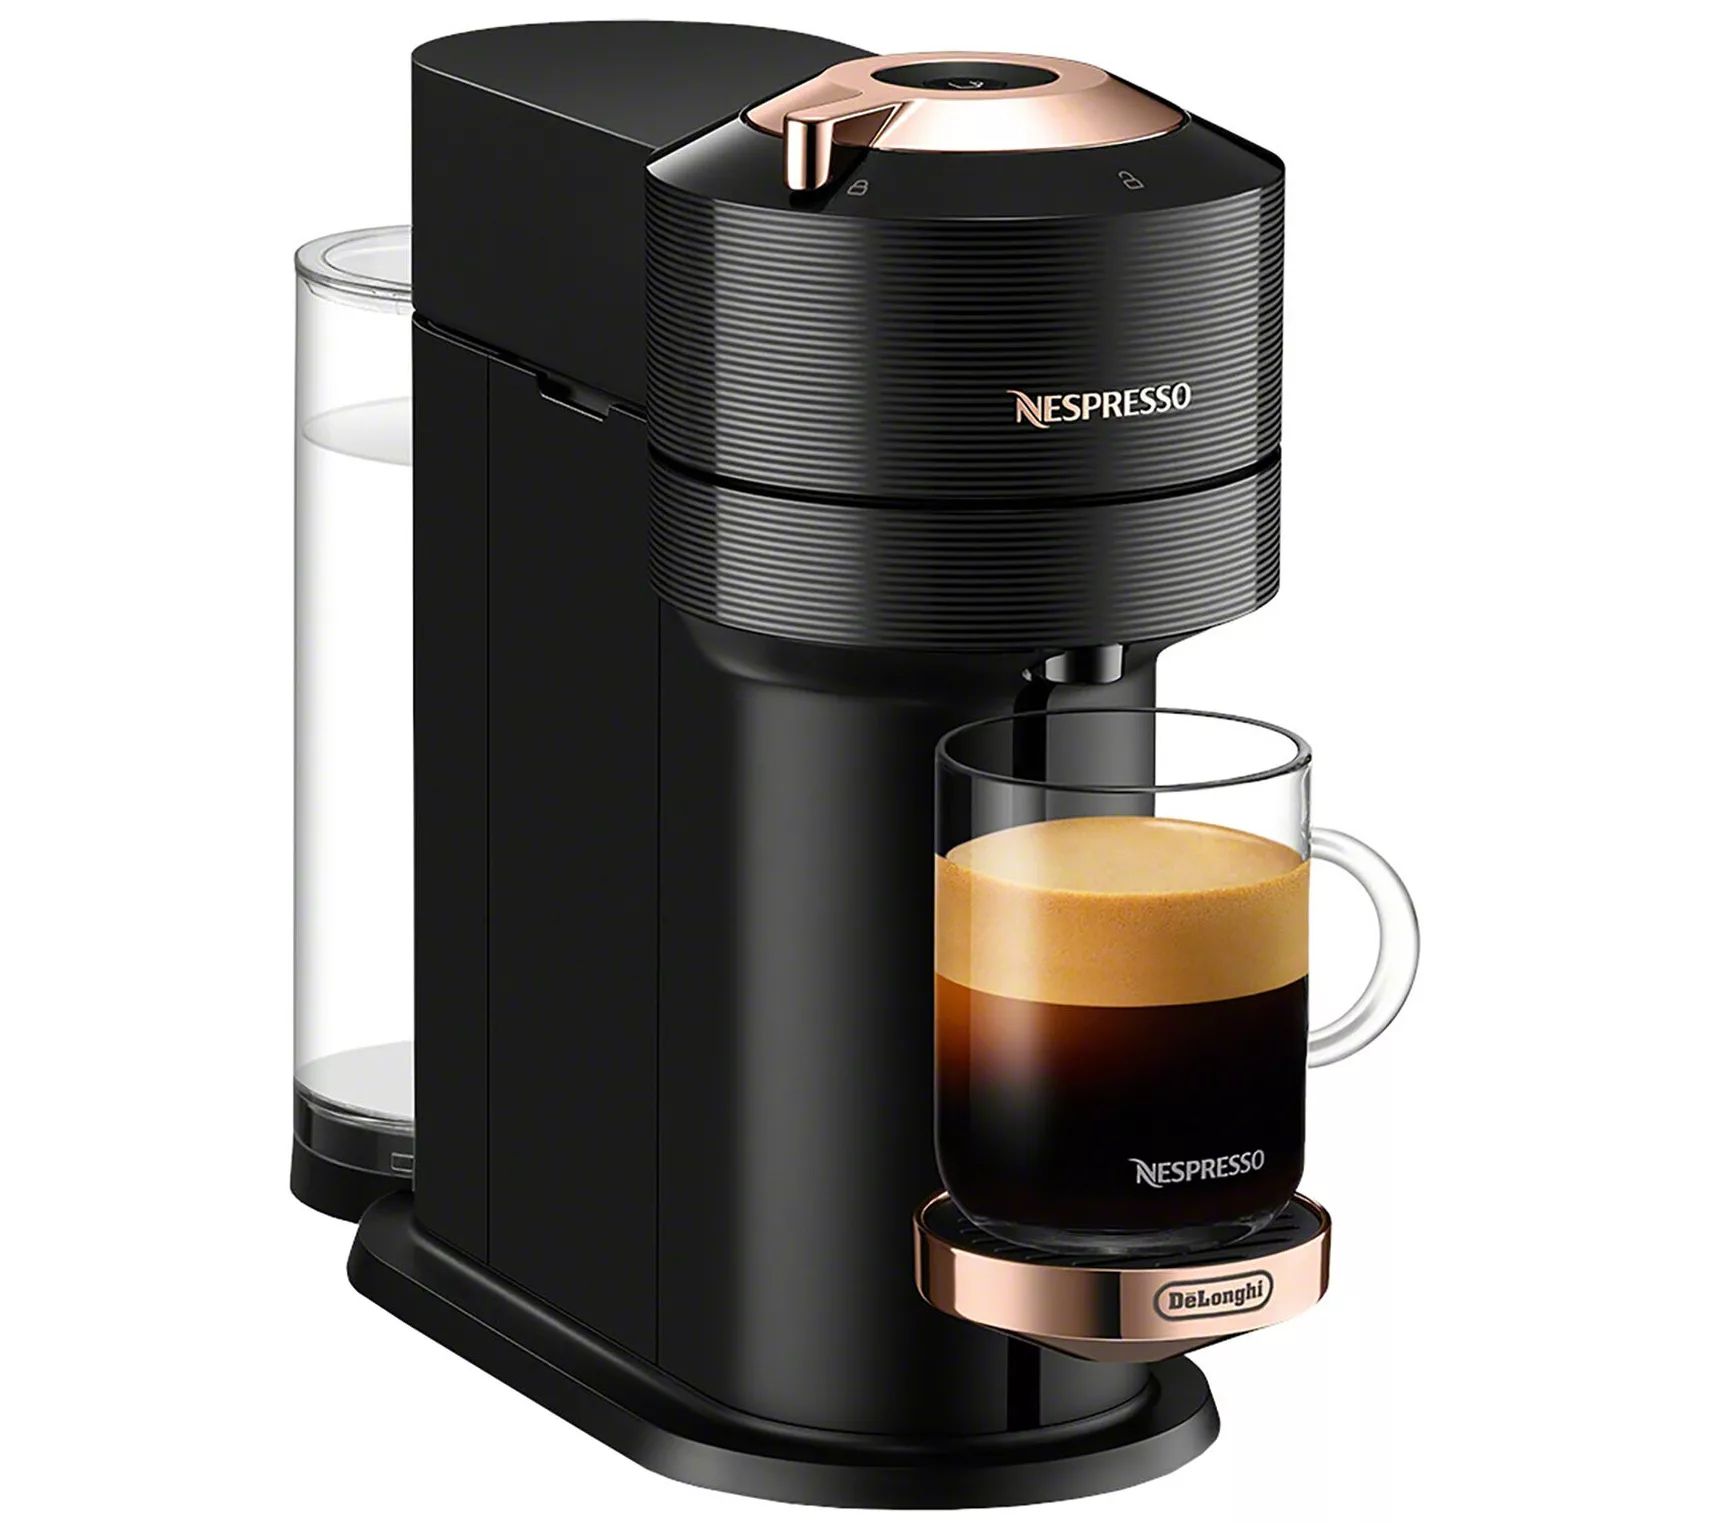 Nespresso Vertuo Next Premium Coffee andEspresso Maker - QVC.com | QVC